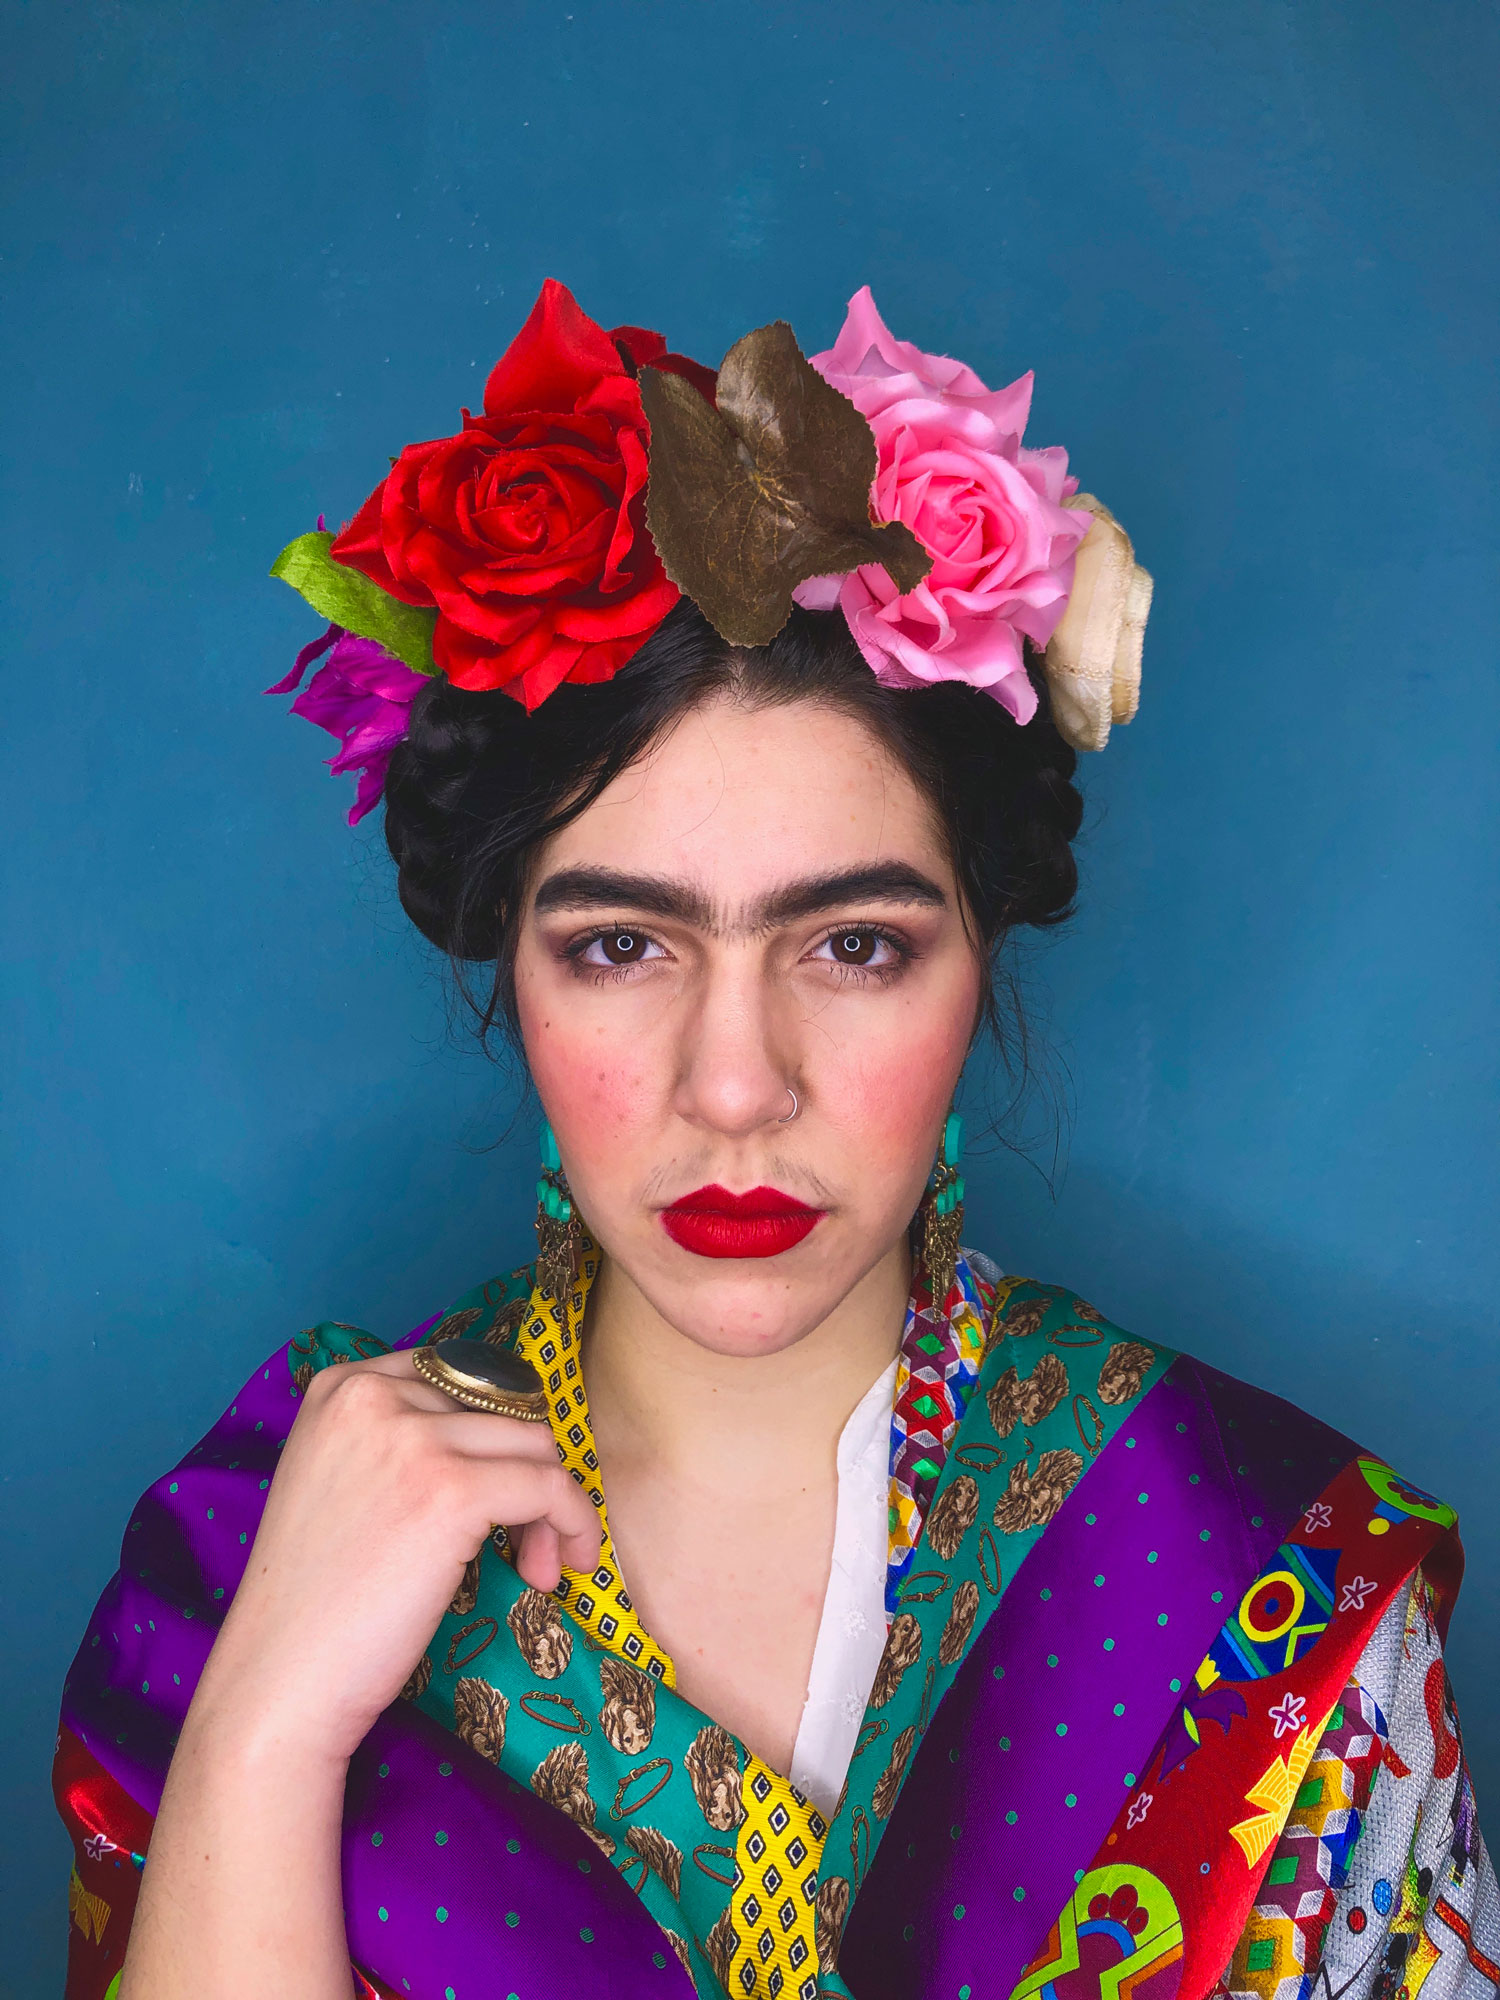 Ritratto fotografico cosplay di Frida Kahlo, interpretata per le stole Misto Sera Vipuntozero